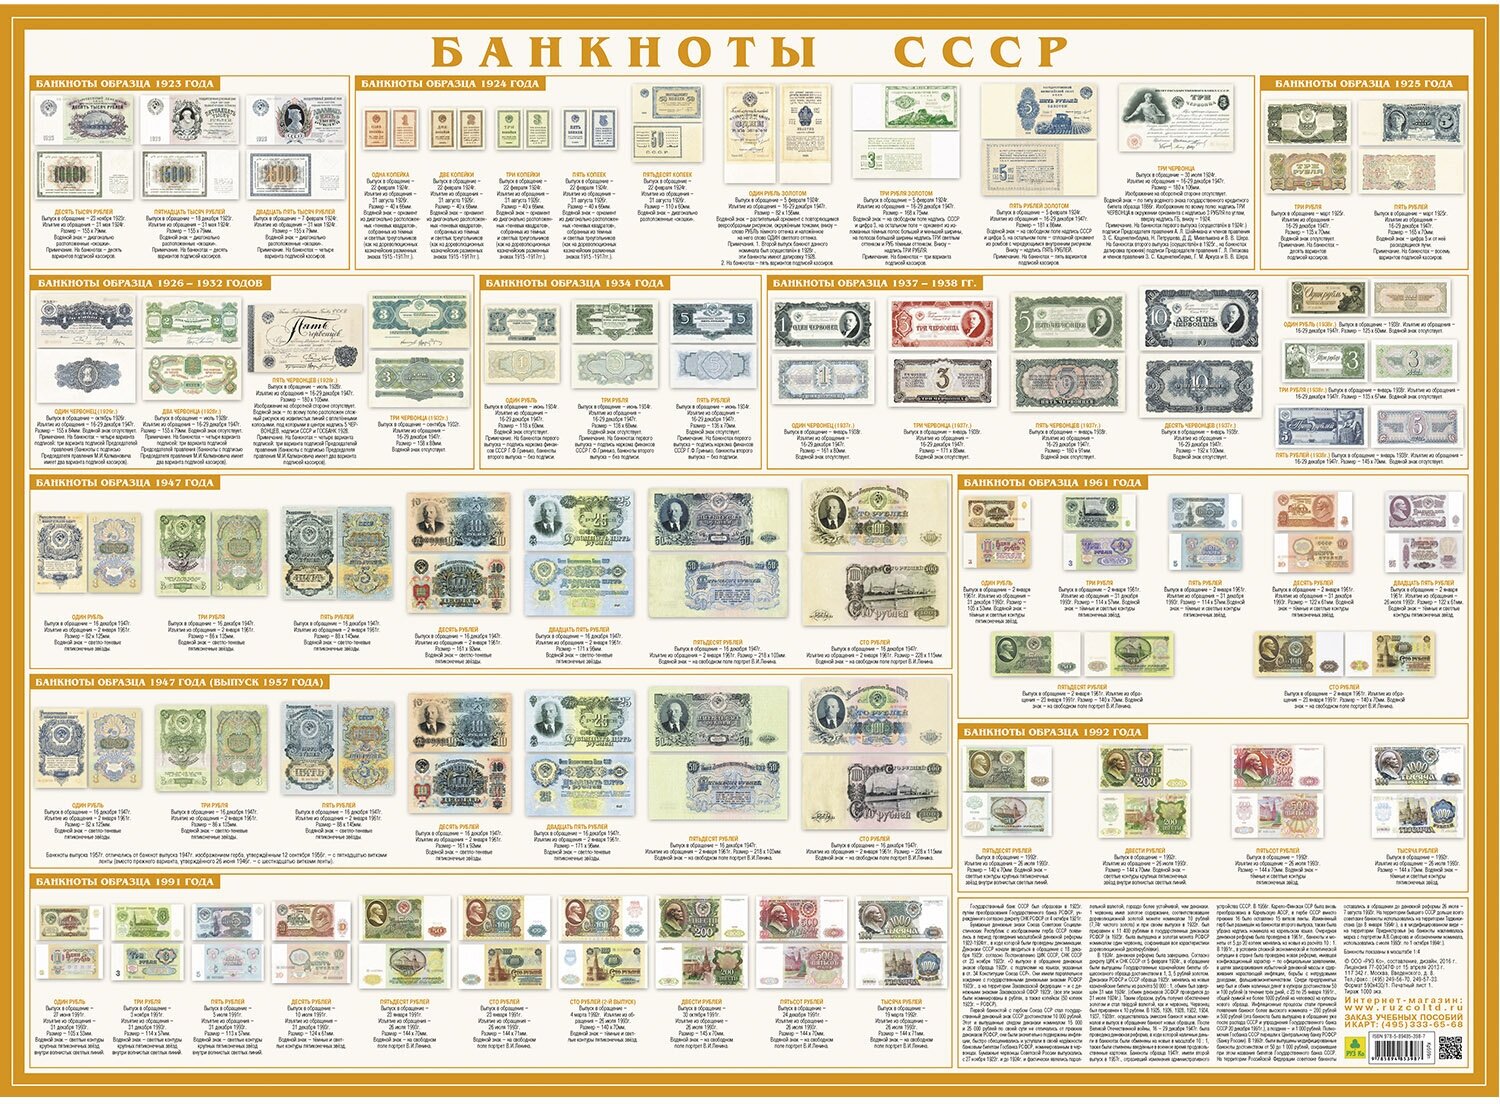 Банкноты СССР. Настольное справочное издание - фото №1